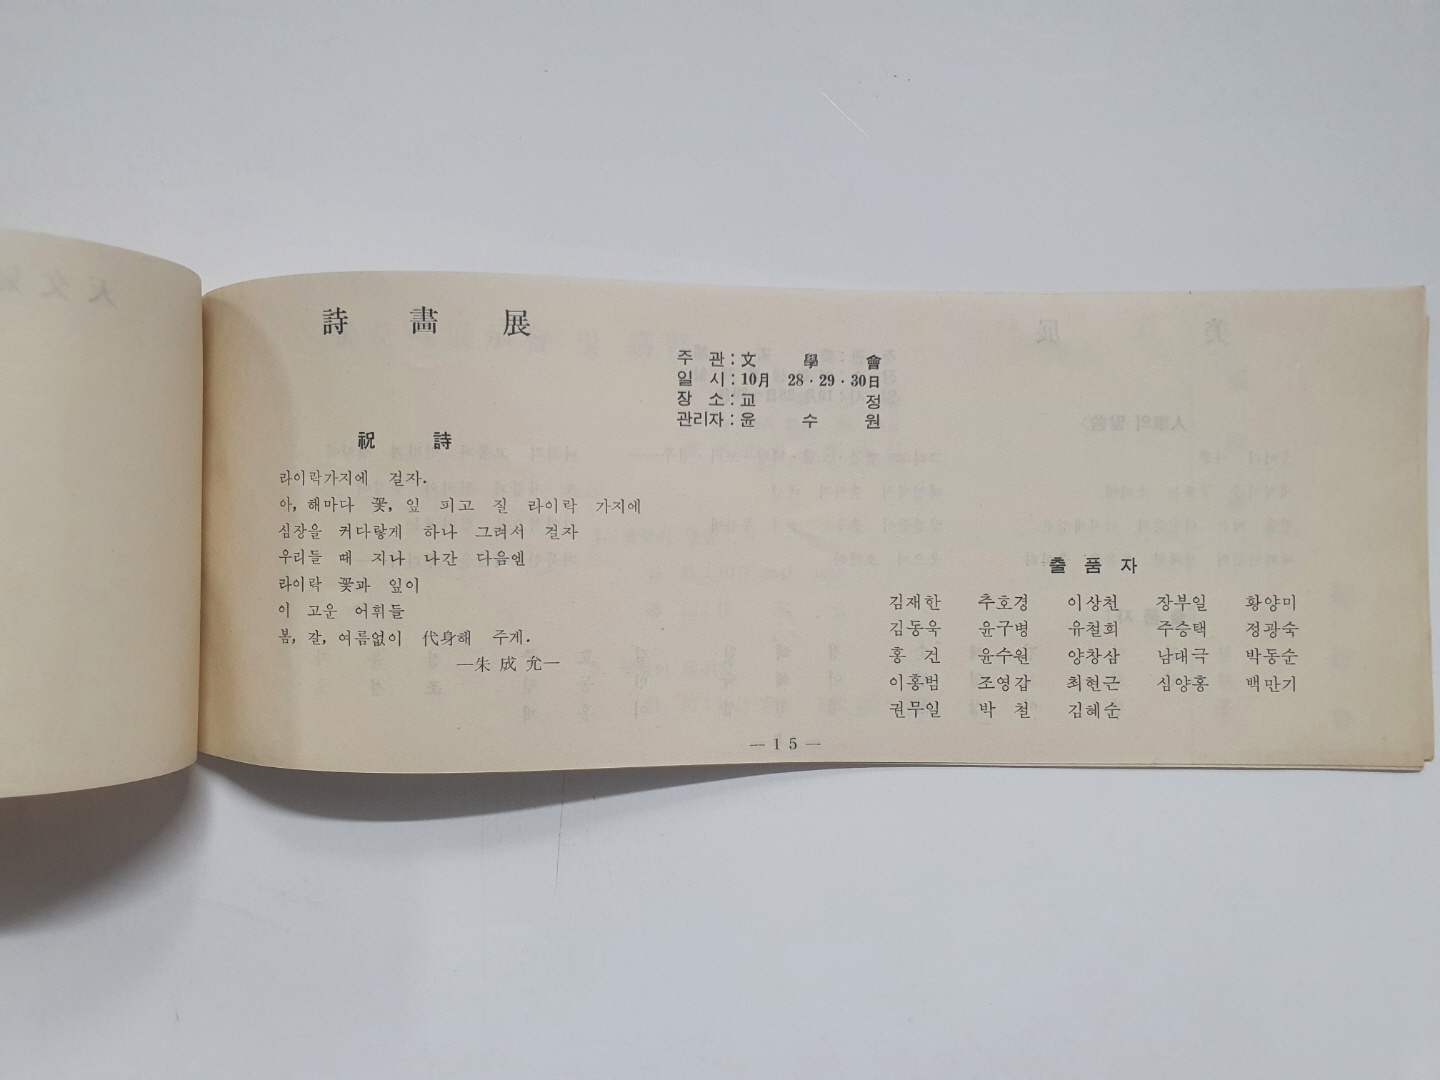 [서울 문리대 학생회 주최 제4회 '학림제'] 팸플릿, 1965